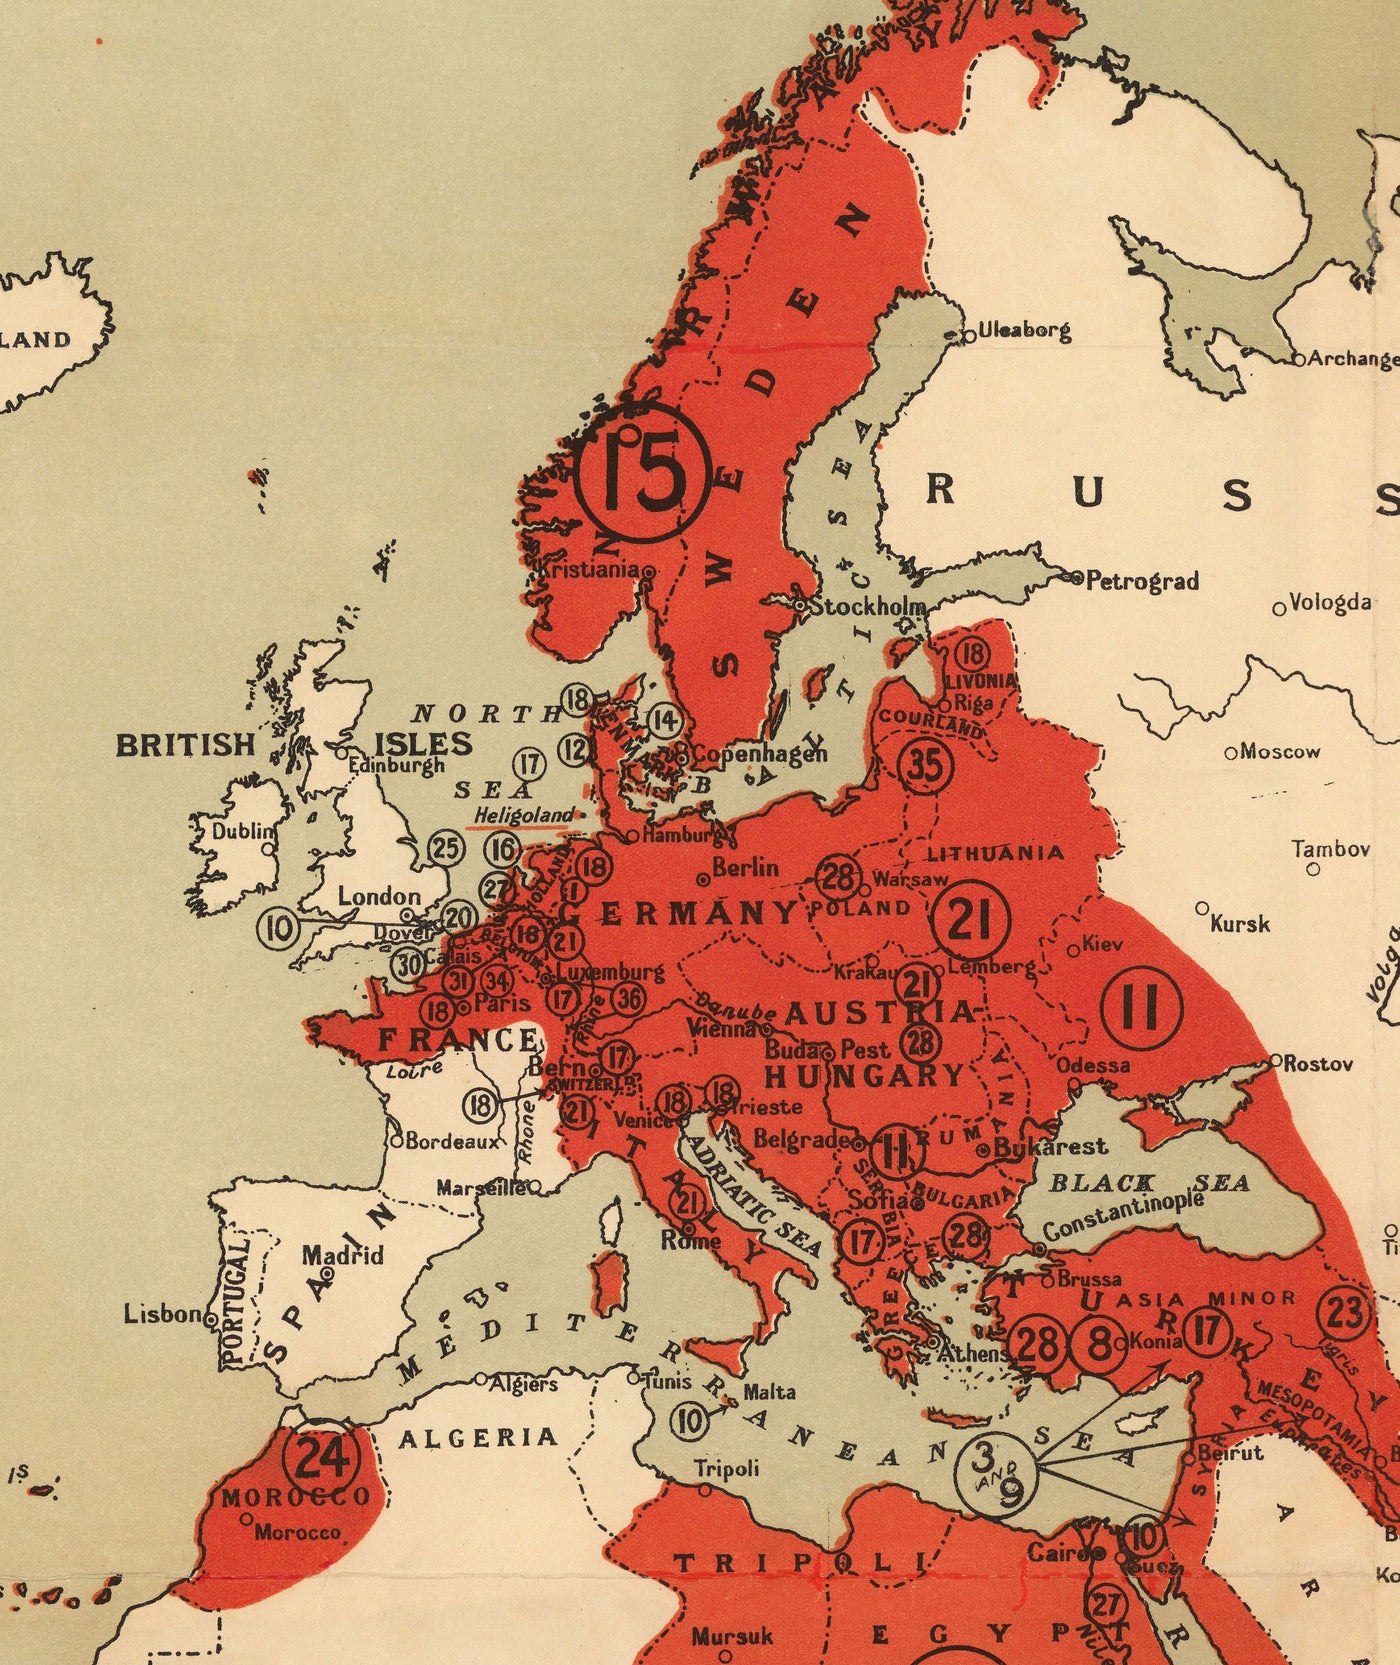 Lo que Alemania quiere, 1916, Mapa del Atlas Nazi de la Primera Guerra Mundial.